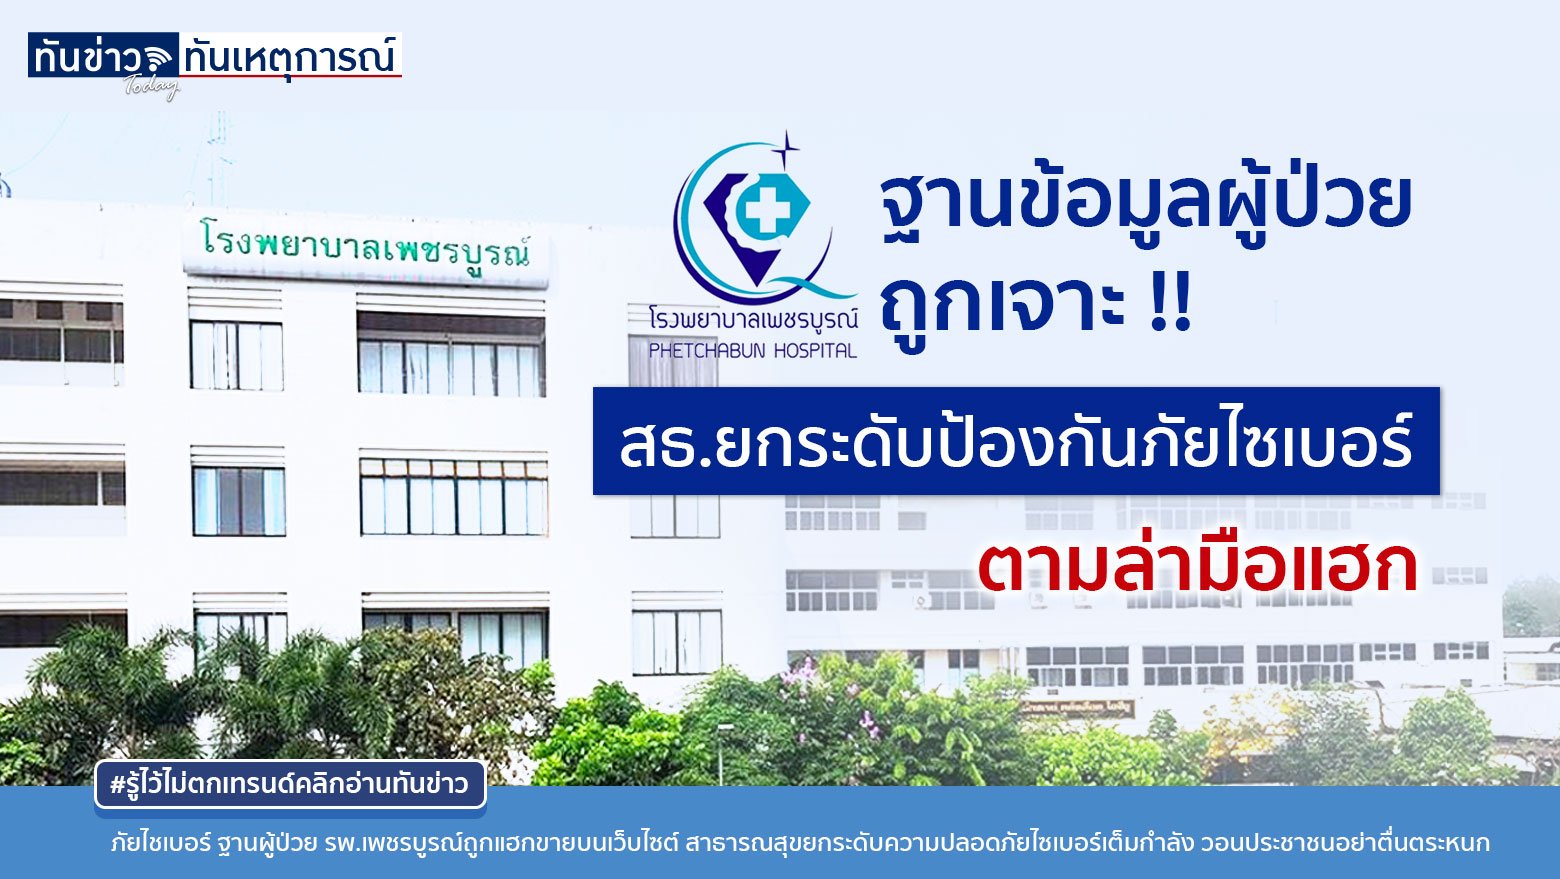 ฐานข้อมูลผู้ป่วย รพ.เพชรบูรณ์โดแฮกเกอร์เจาะอีกแล้ว!! สาธารณสุขสั่งยกระดับการป้องกันภัยไซเบอร์เต็มที่ สถิติพบไทยถูกเรียกค่าไถ่ข้อมูลสูงอันดับ 3 ในอาเซียน